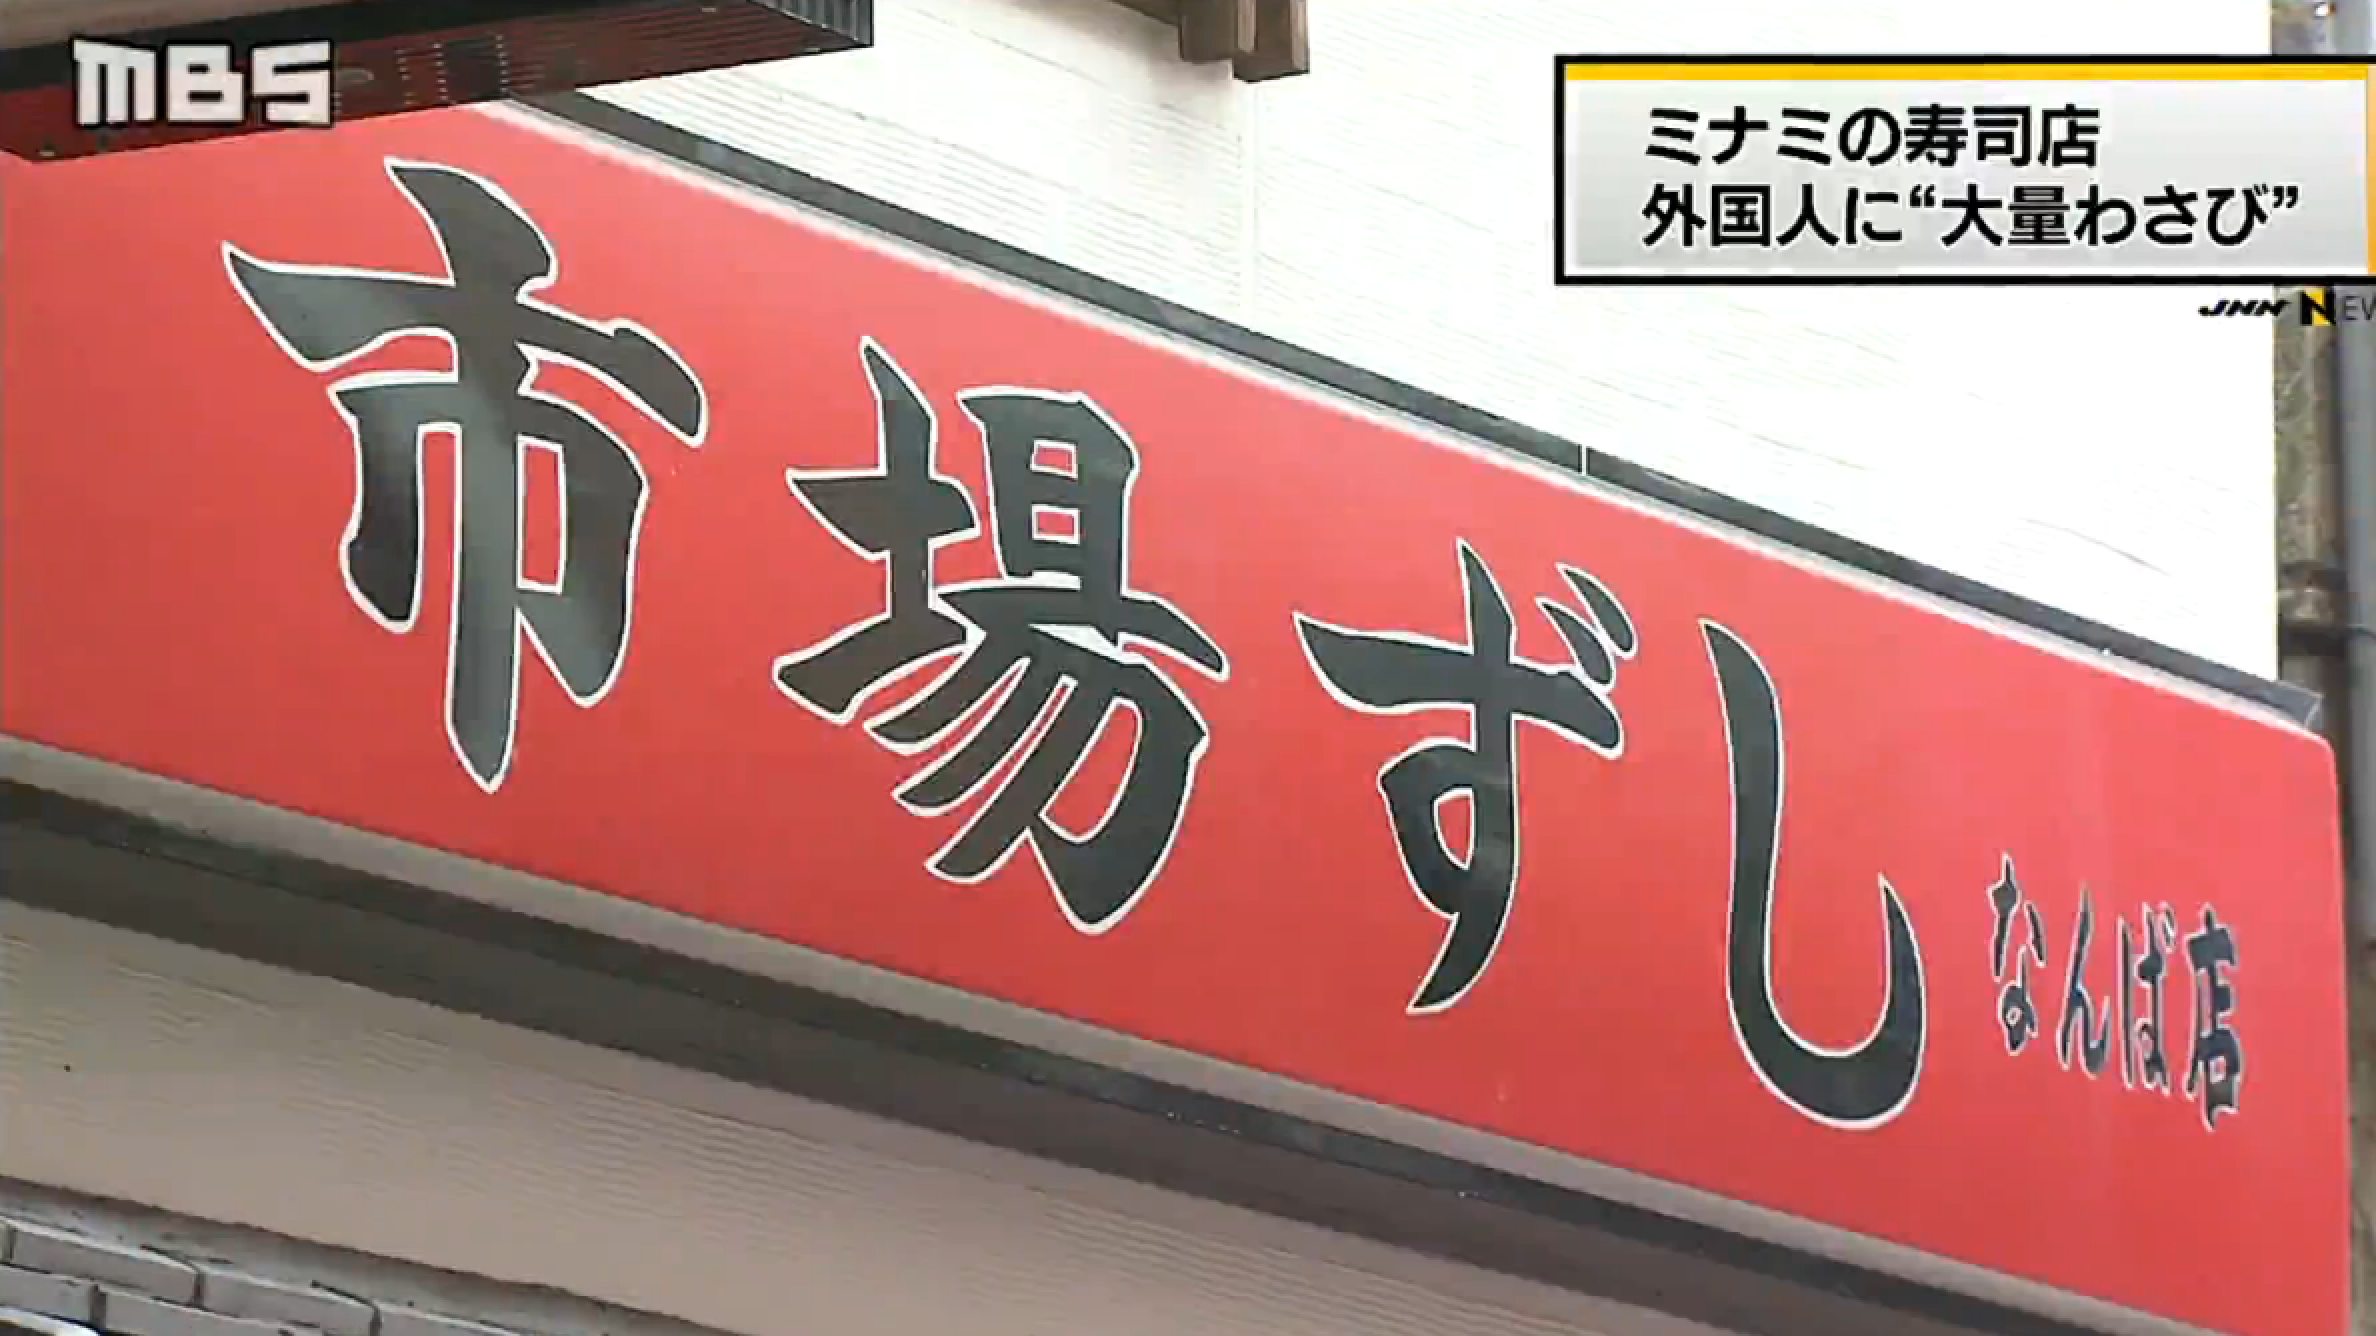 遊客喊住食辣辣壽司 大阪壽司店涉歧視外國食客